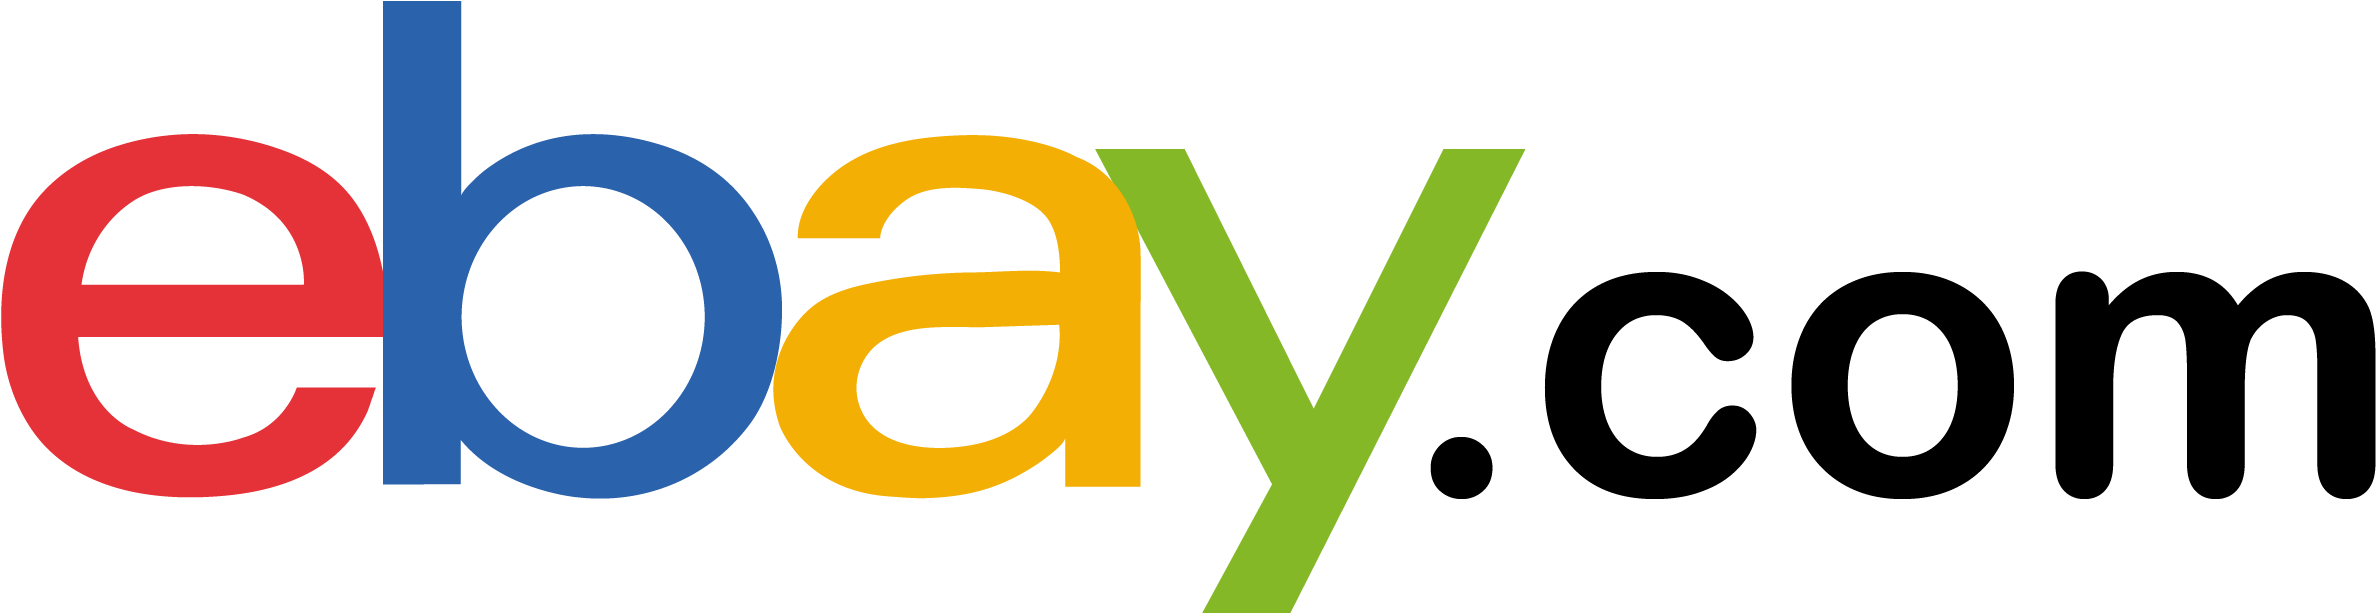 EBay logo PNG прозрачное изображение